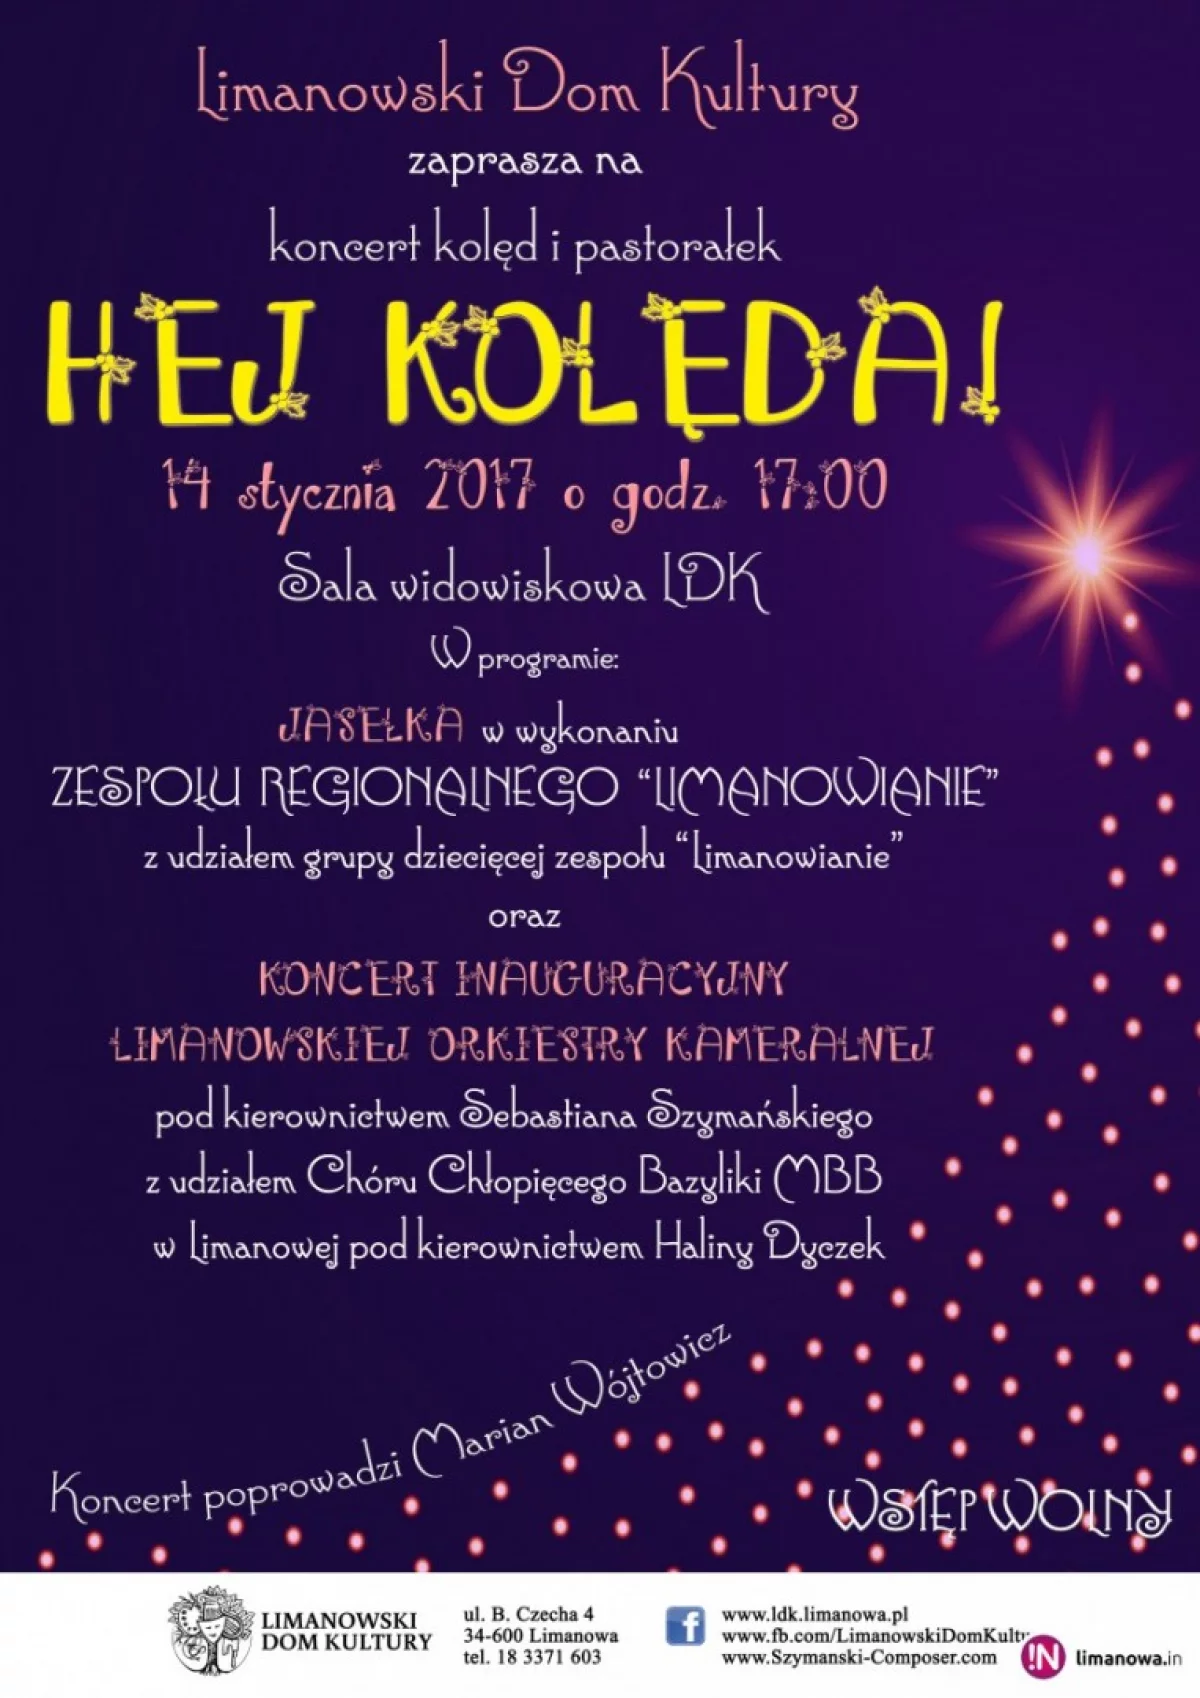 „HEJ KOLĘDA” - koncert kolęd i pastorałek, w sobotę 14 stycznia w Limanowskim Domu Kultury